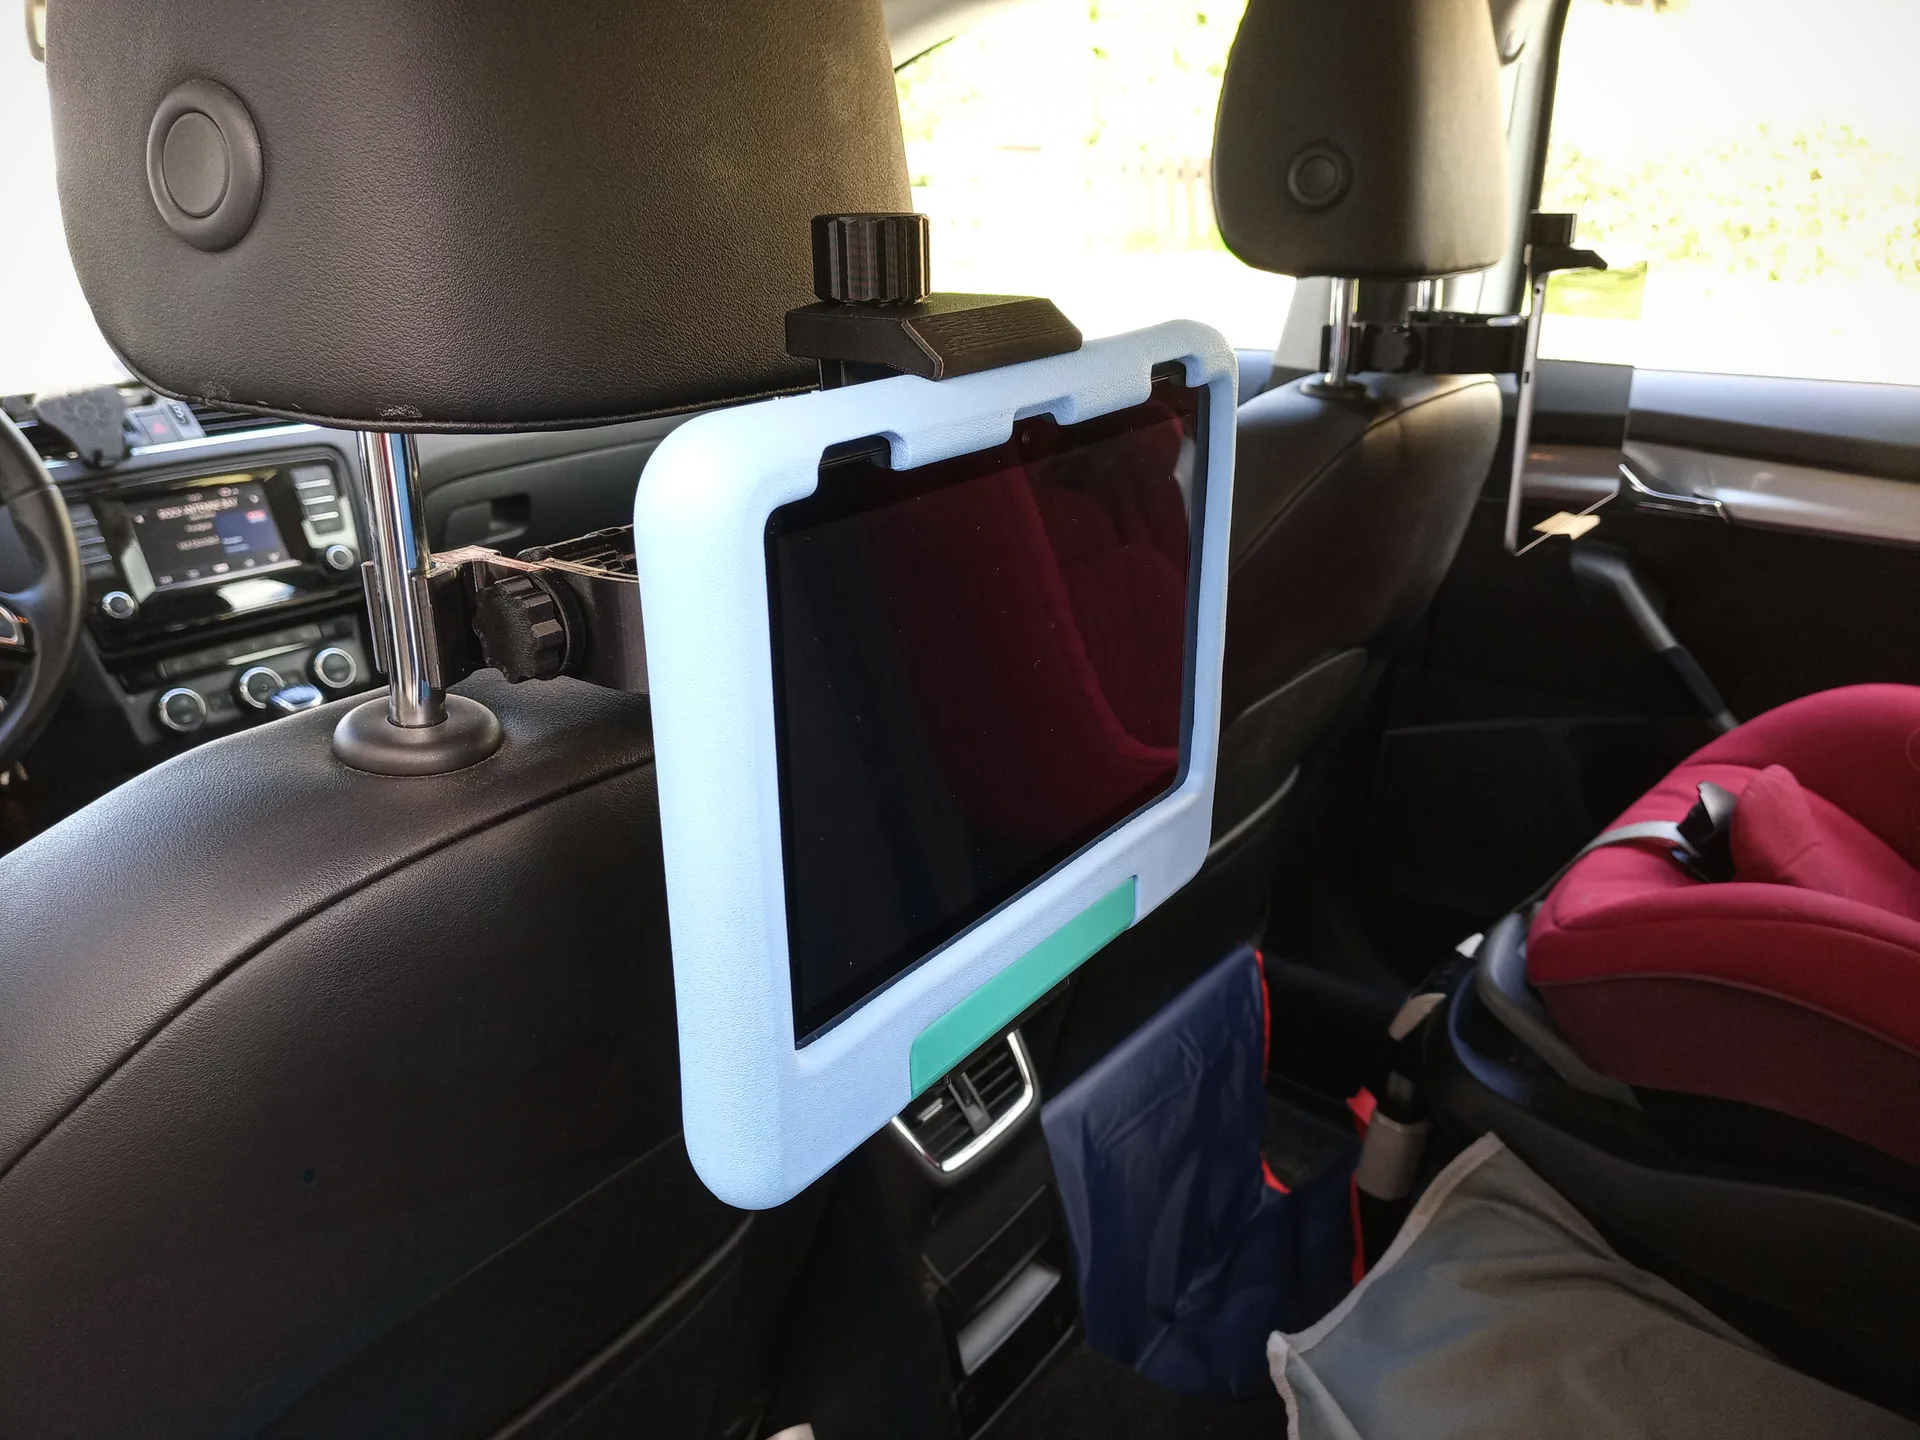 Universal tablet holder for cars/headrest by Bananenminister